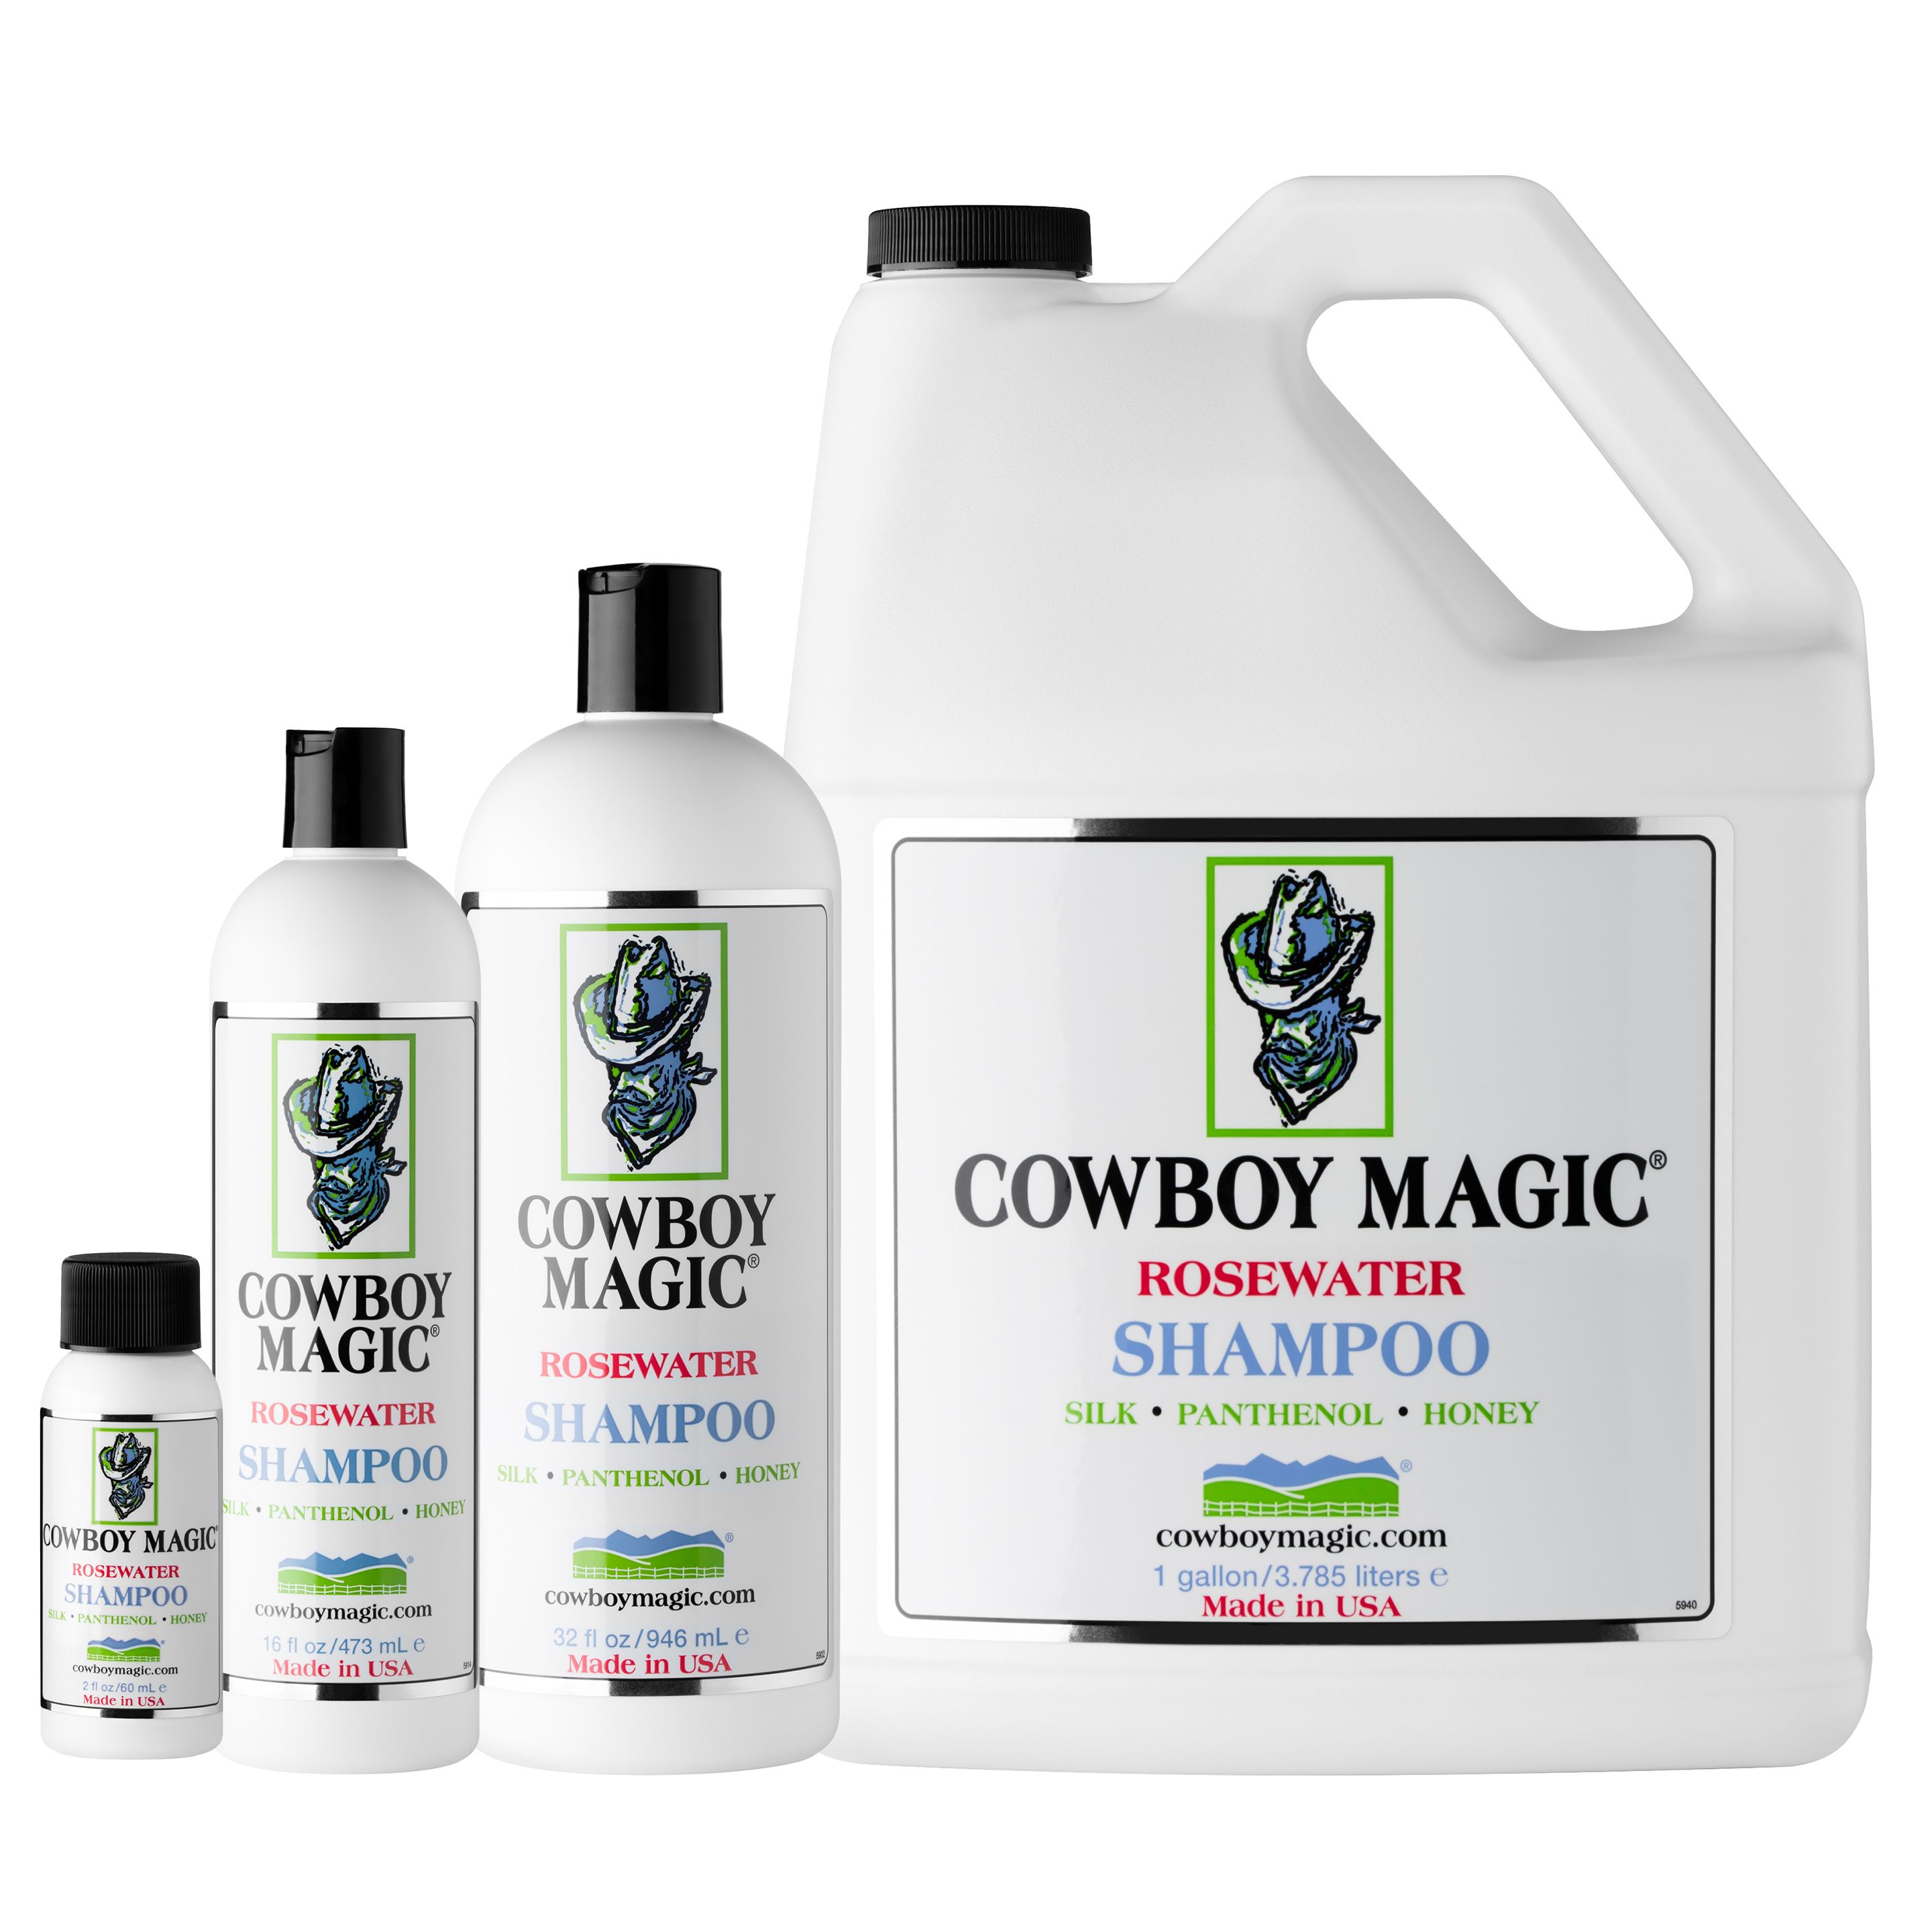 Cowboy Magic Shampoo. Conditioner & Detangler Value Pack